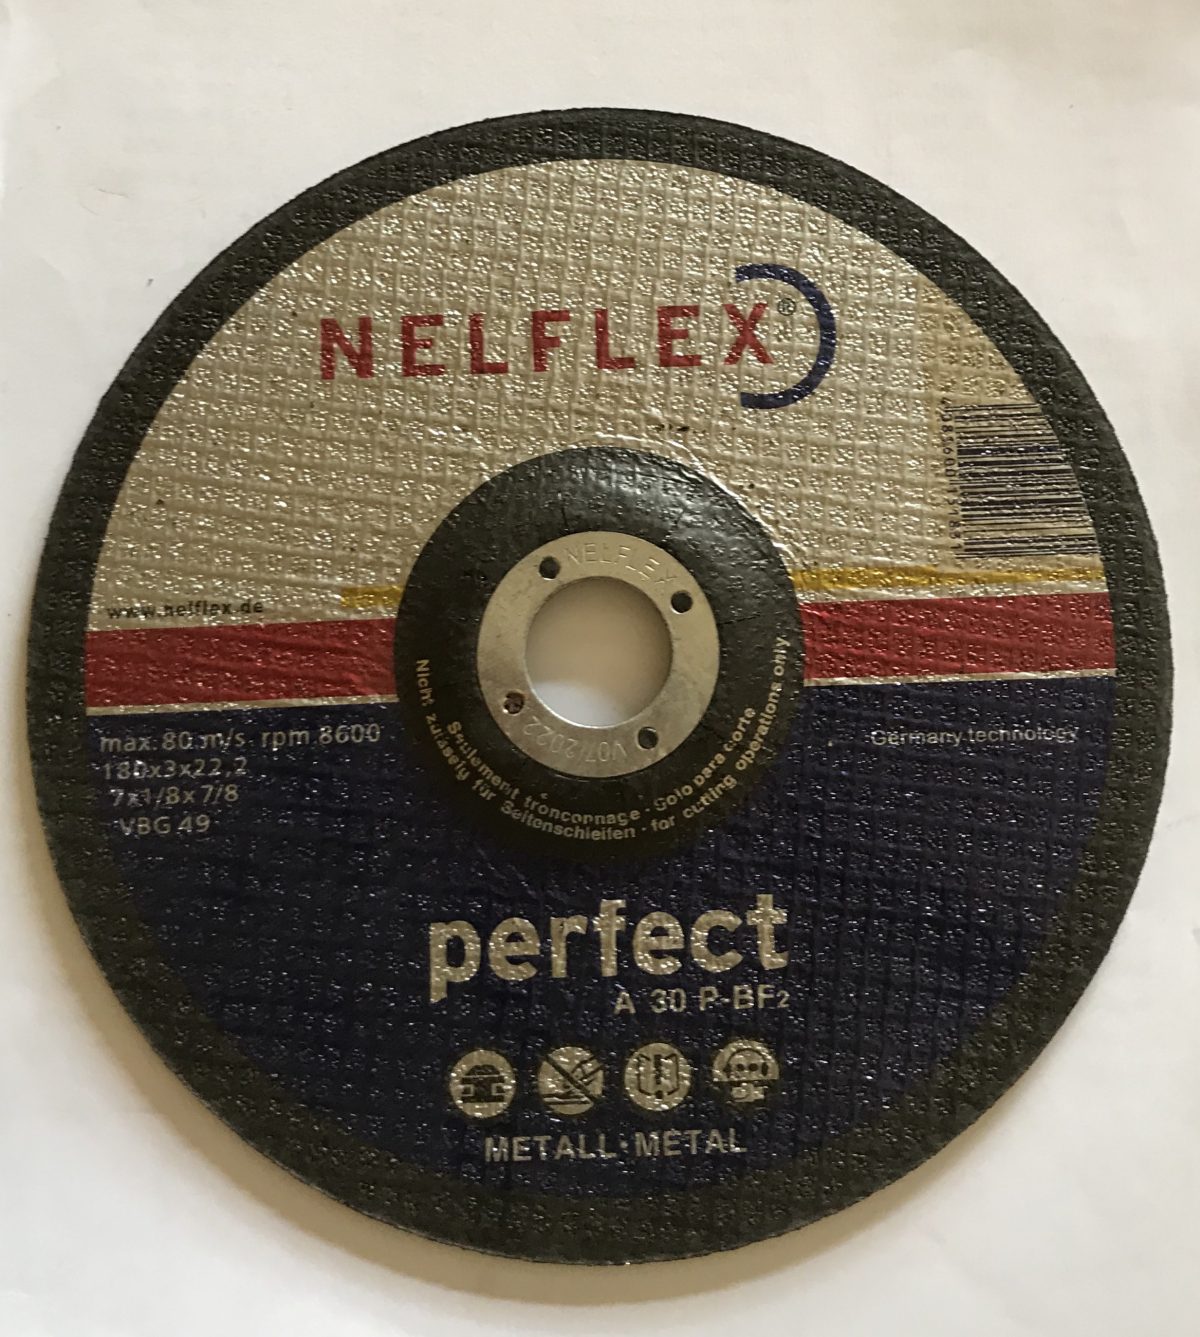 7 Inch Nelflex 3mm Cutting Disc